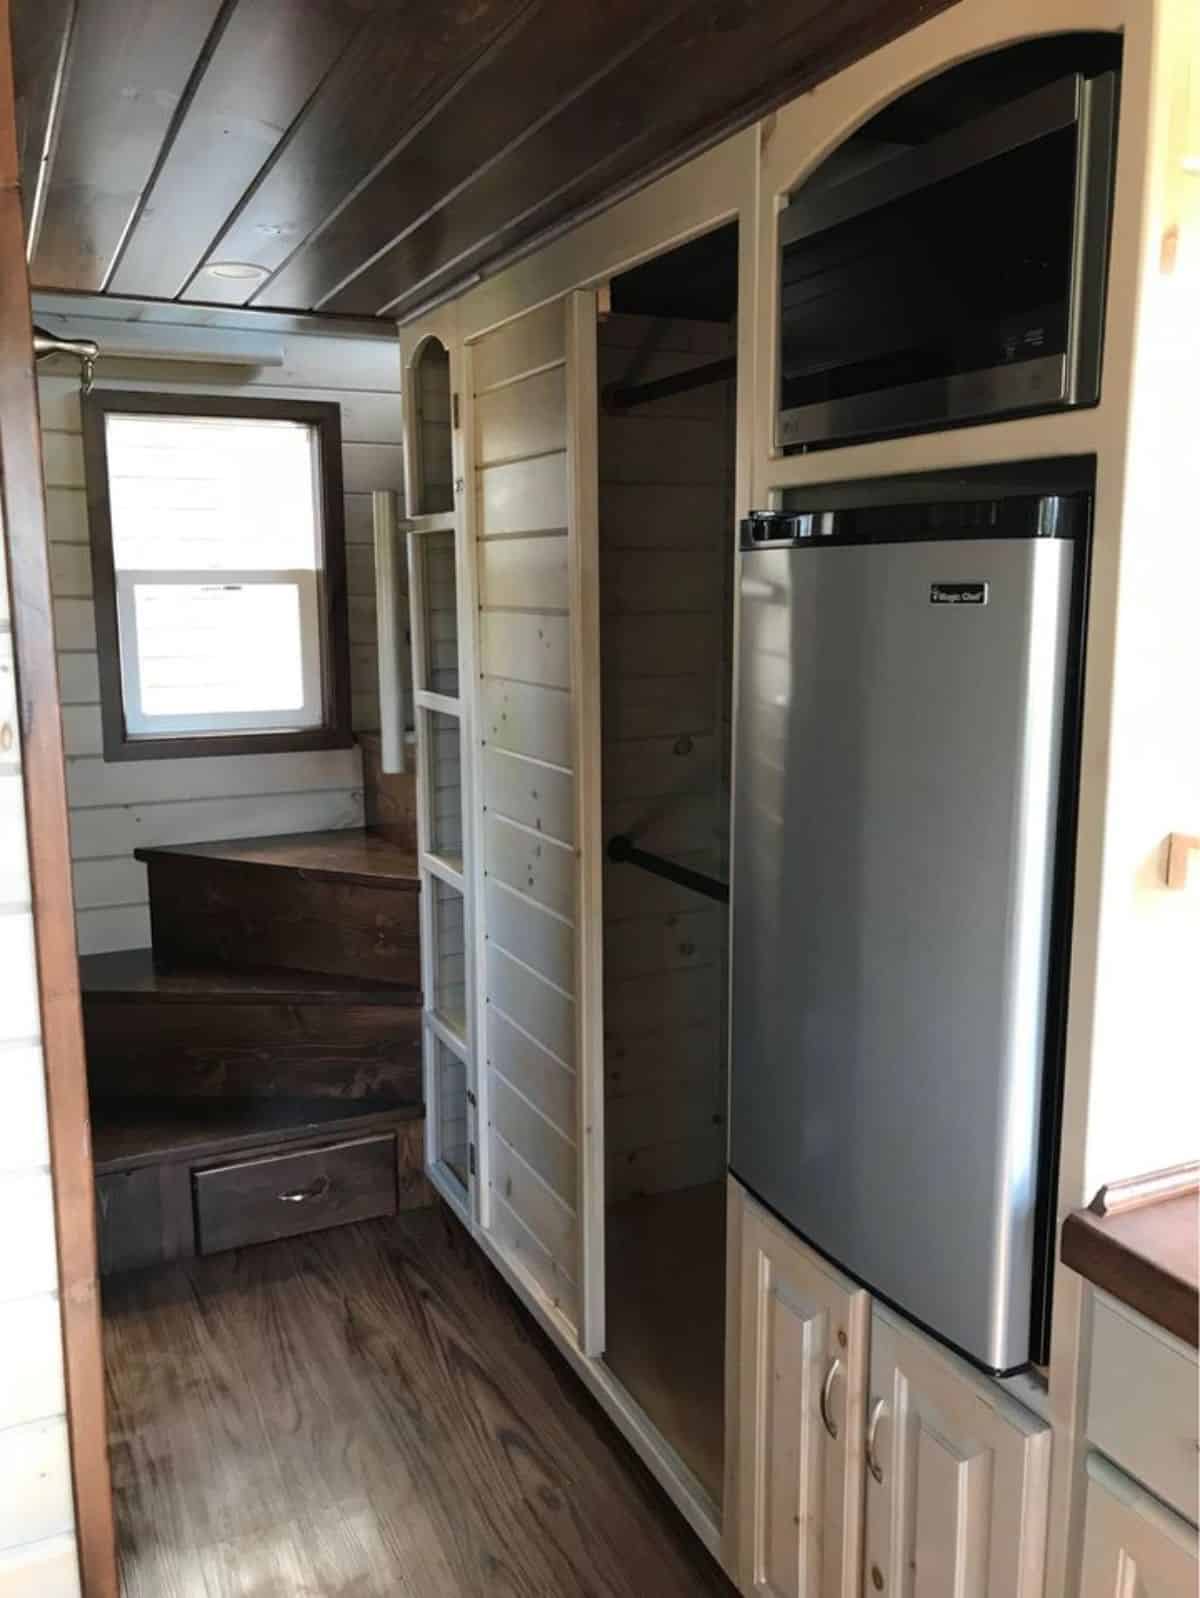 Storage cabinets under stairs has refrigerator underneath